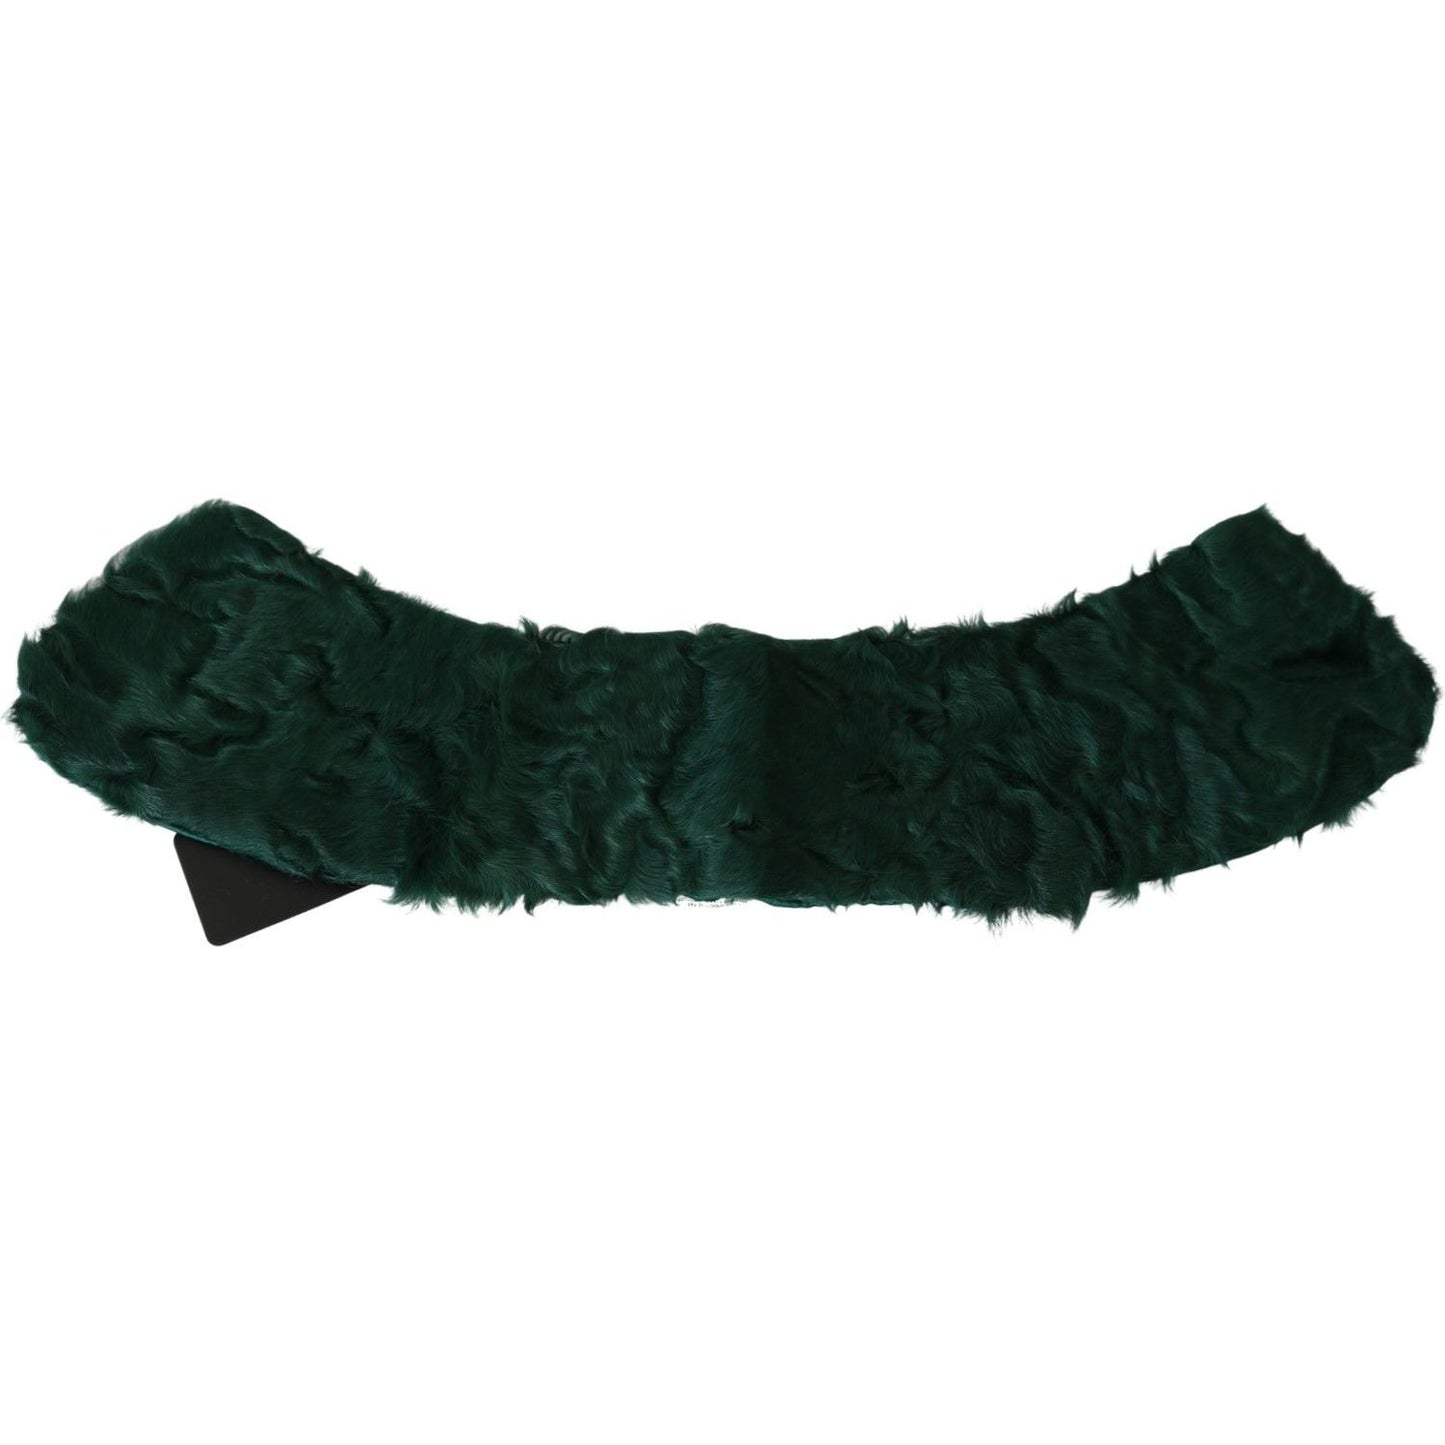 Dolce & Gabbana Elegant Lambskin Fur Scarf in Lush Green green-fur-shoulder-collar-wrap-lambskin-scarf